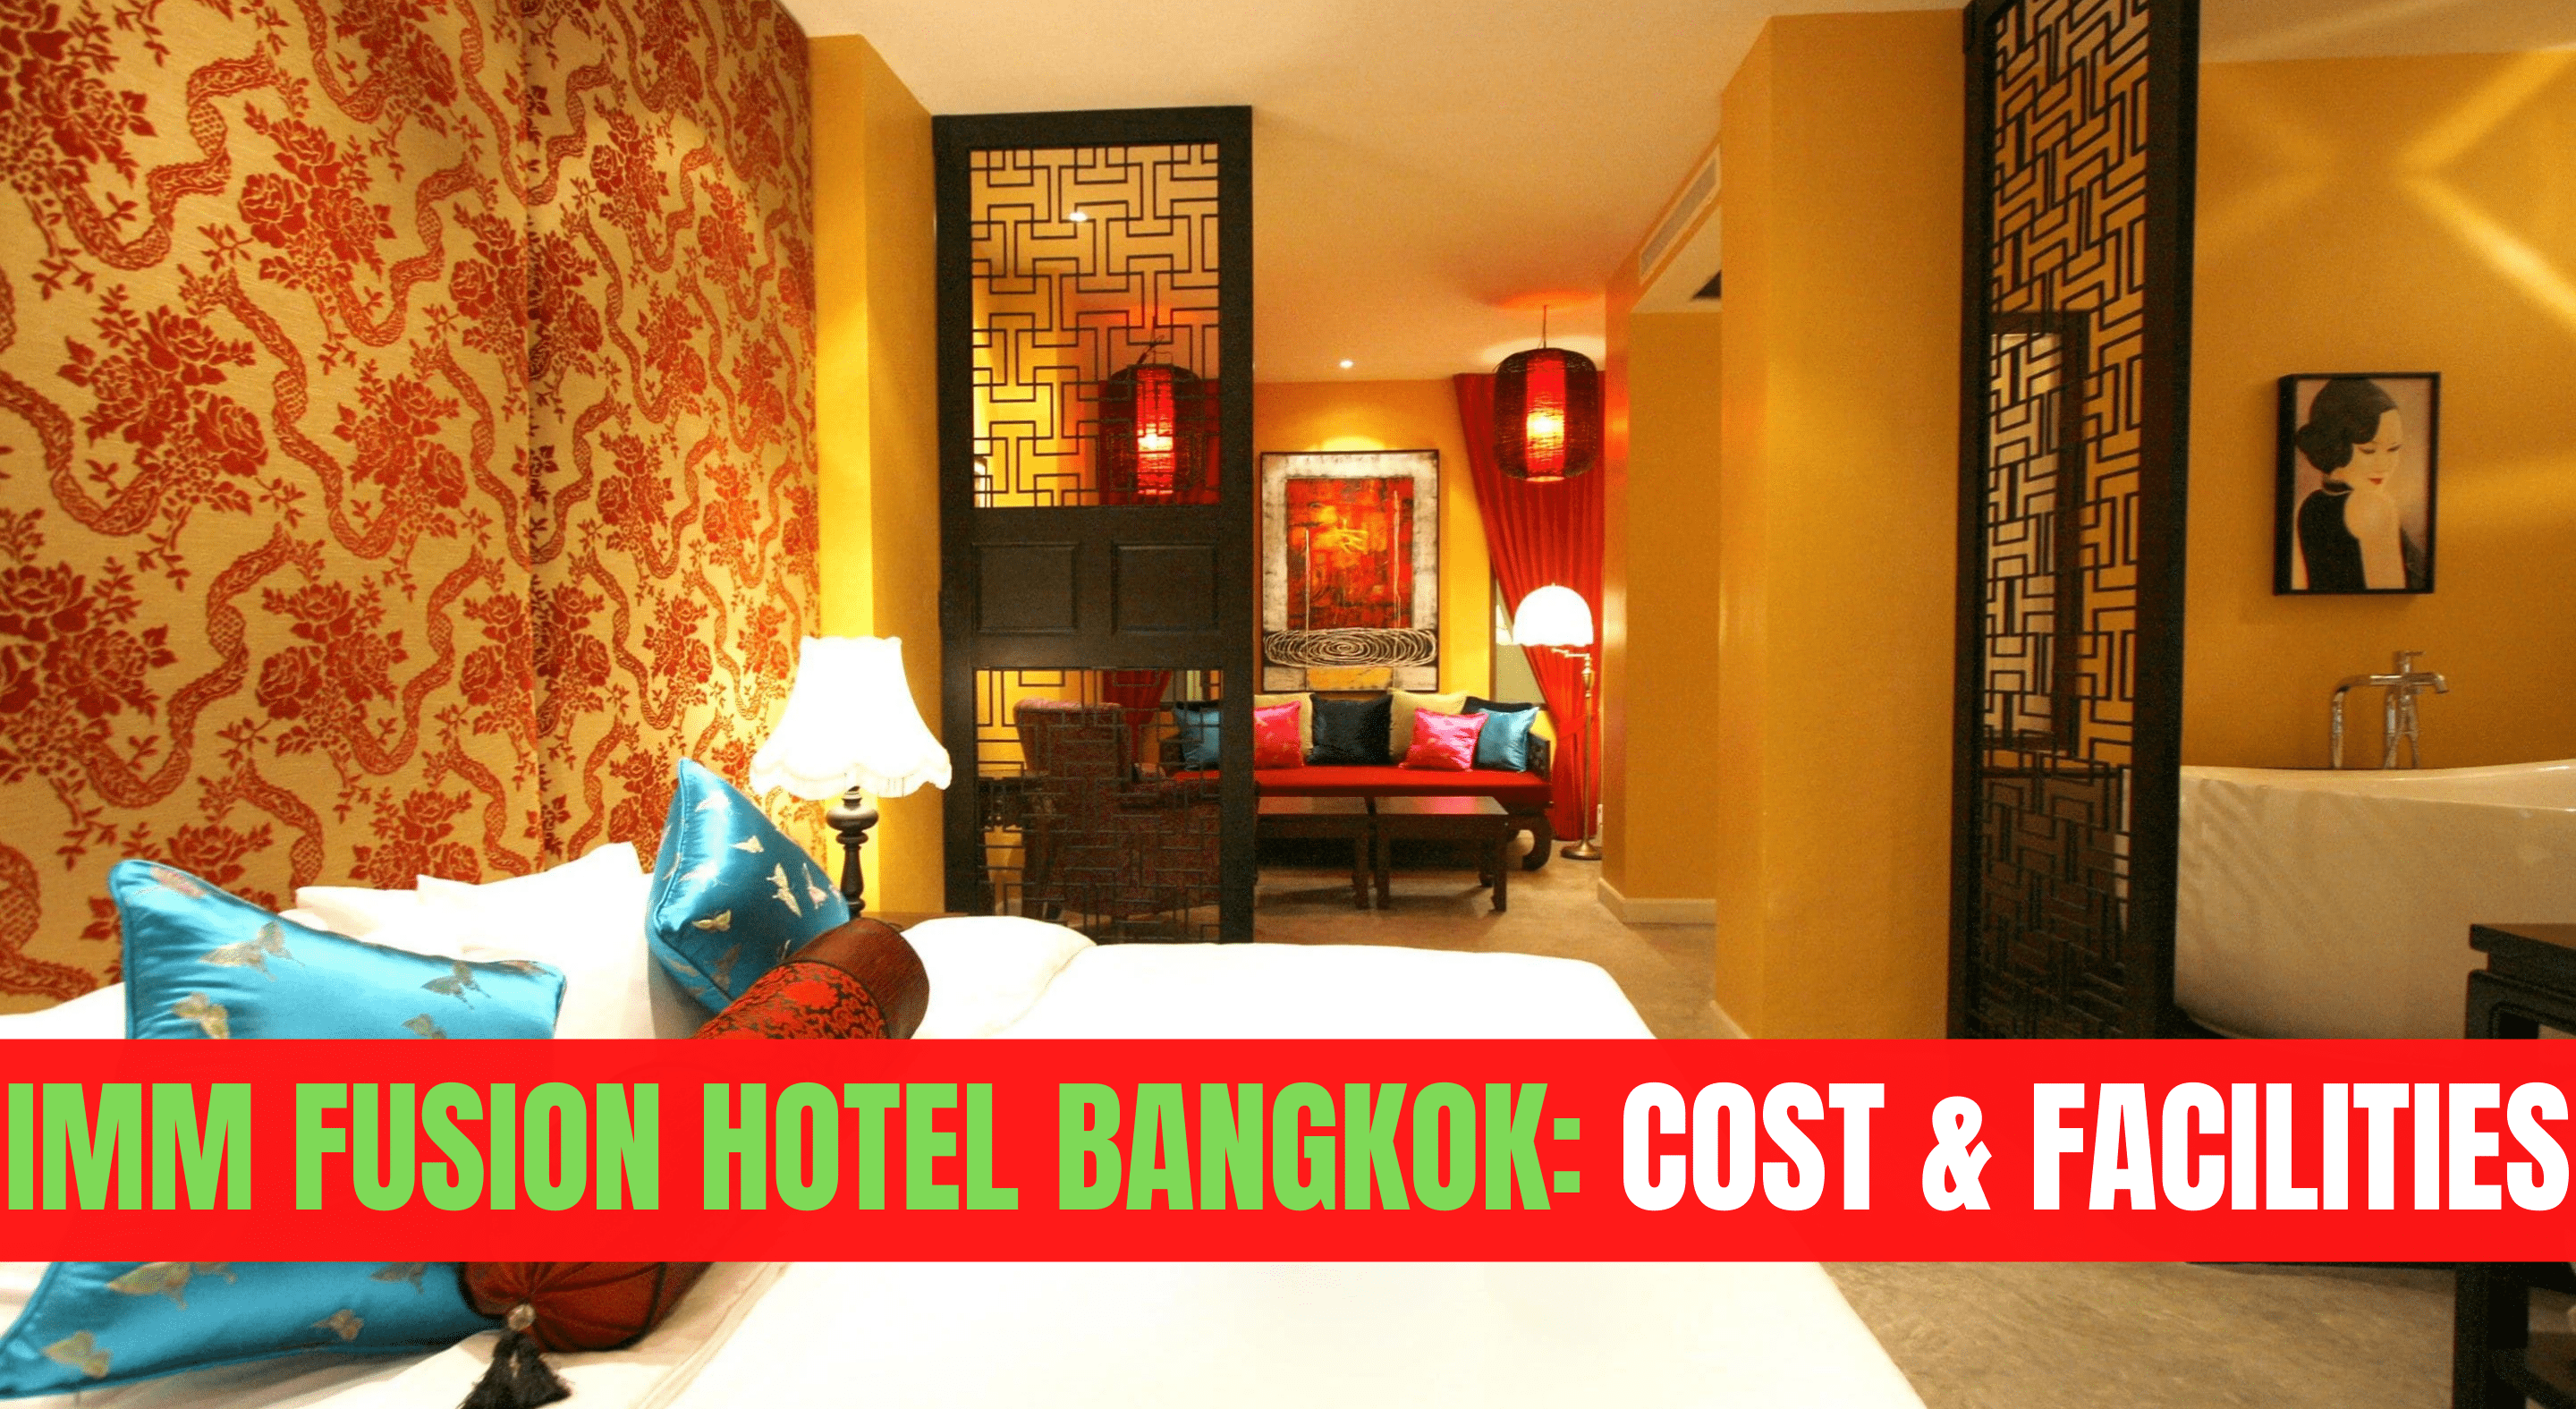 Imm Fusion Hotel Bangkok: Cost & Facilities